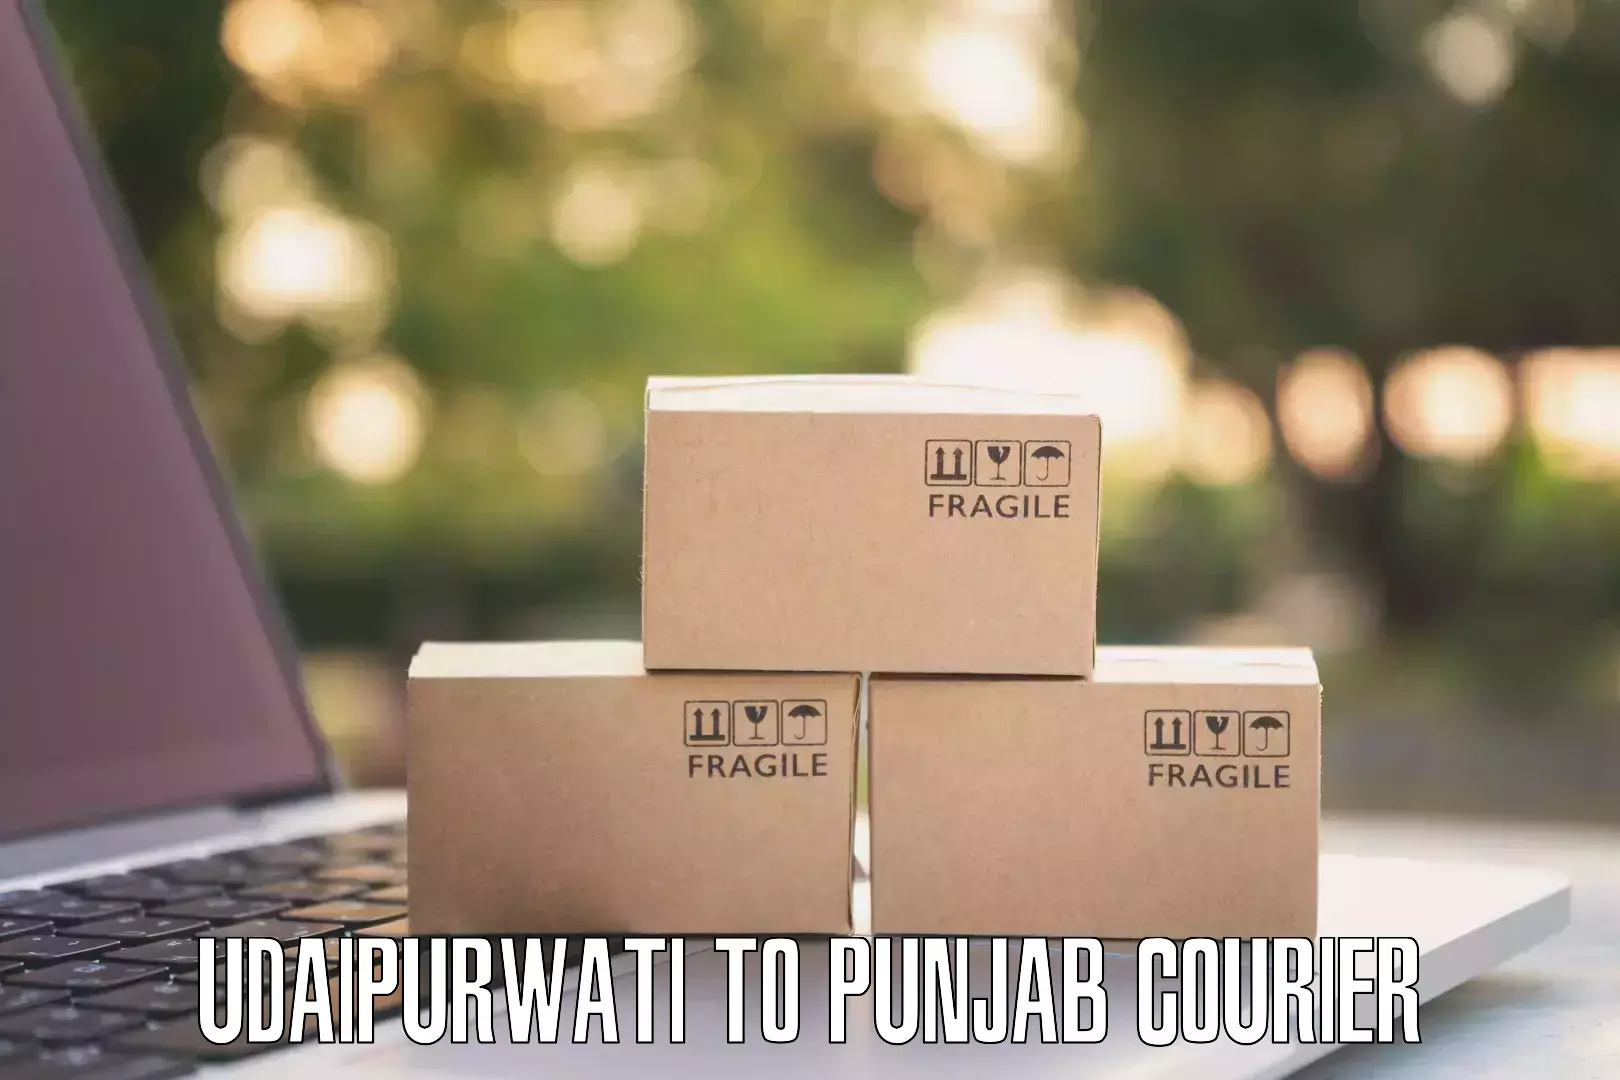 Efficient parcel service Udaipurwati to Phillaur